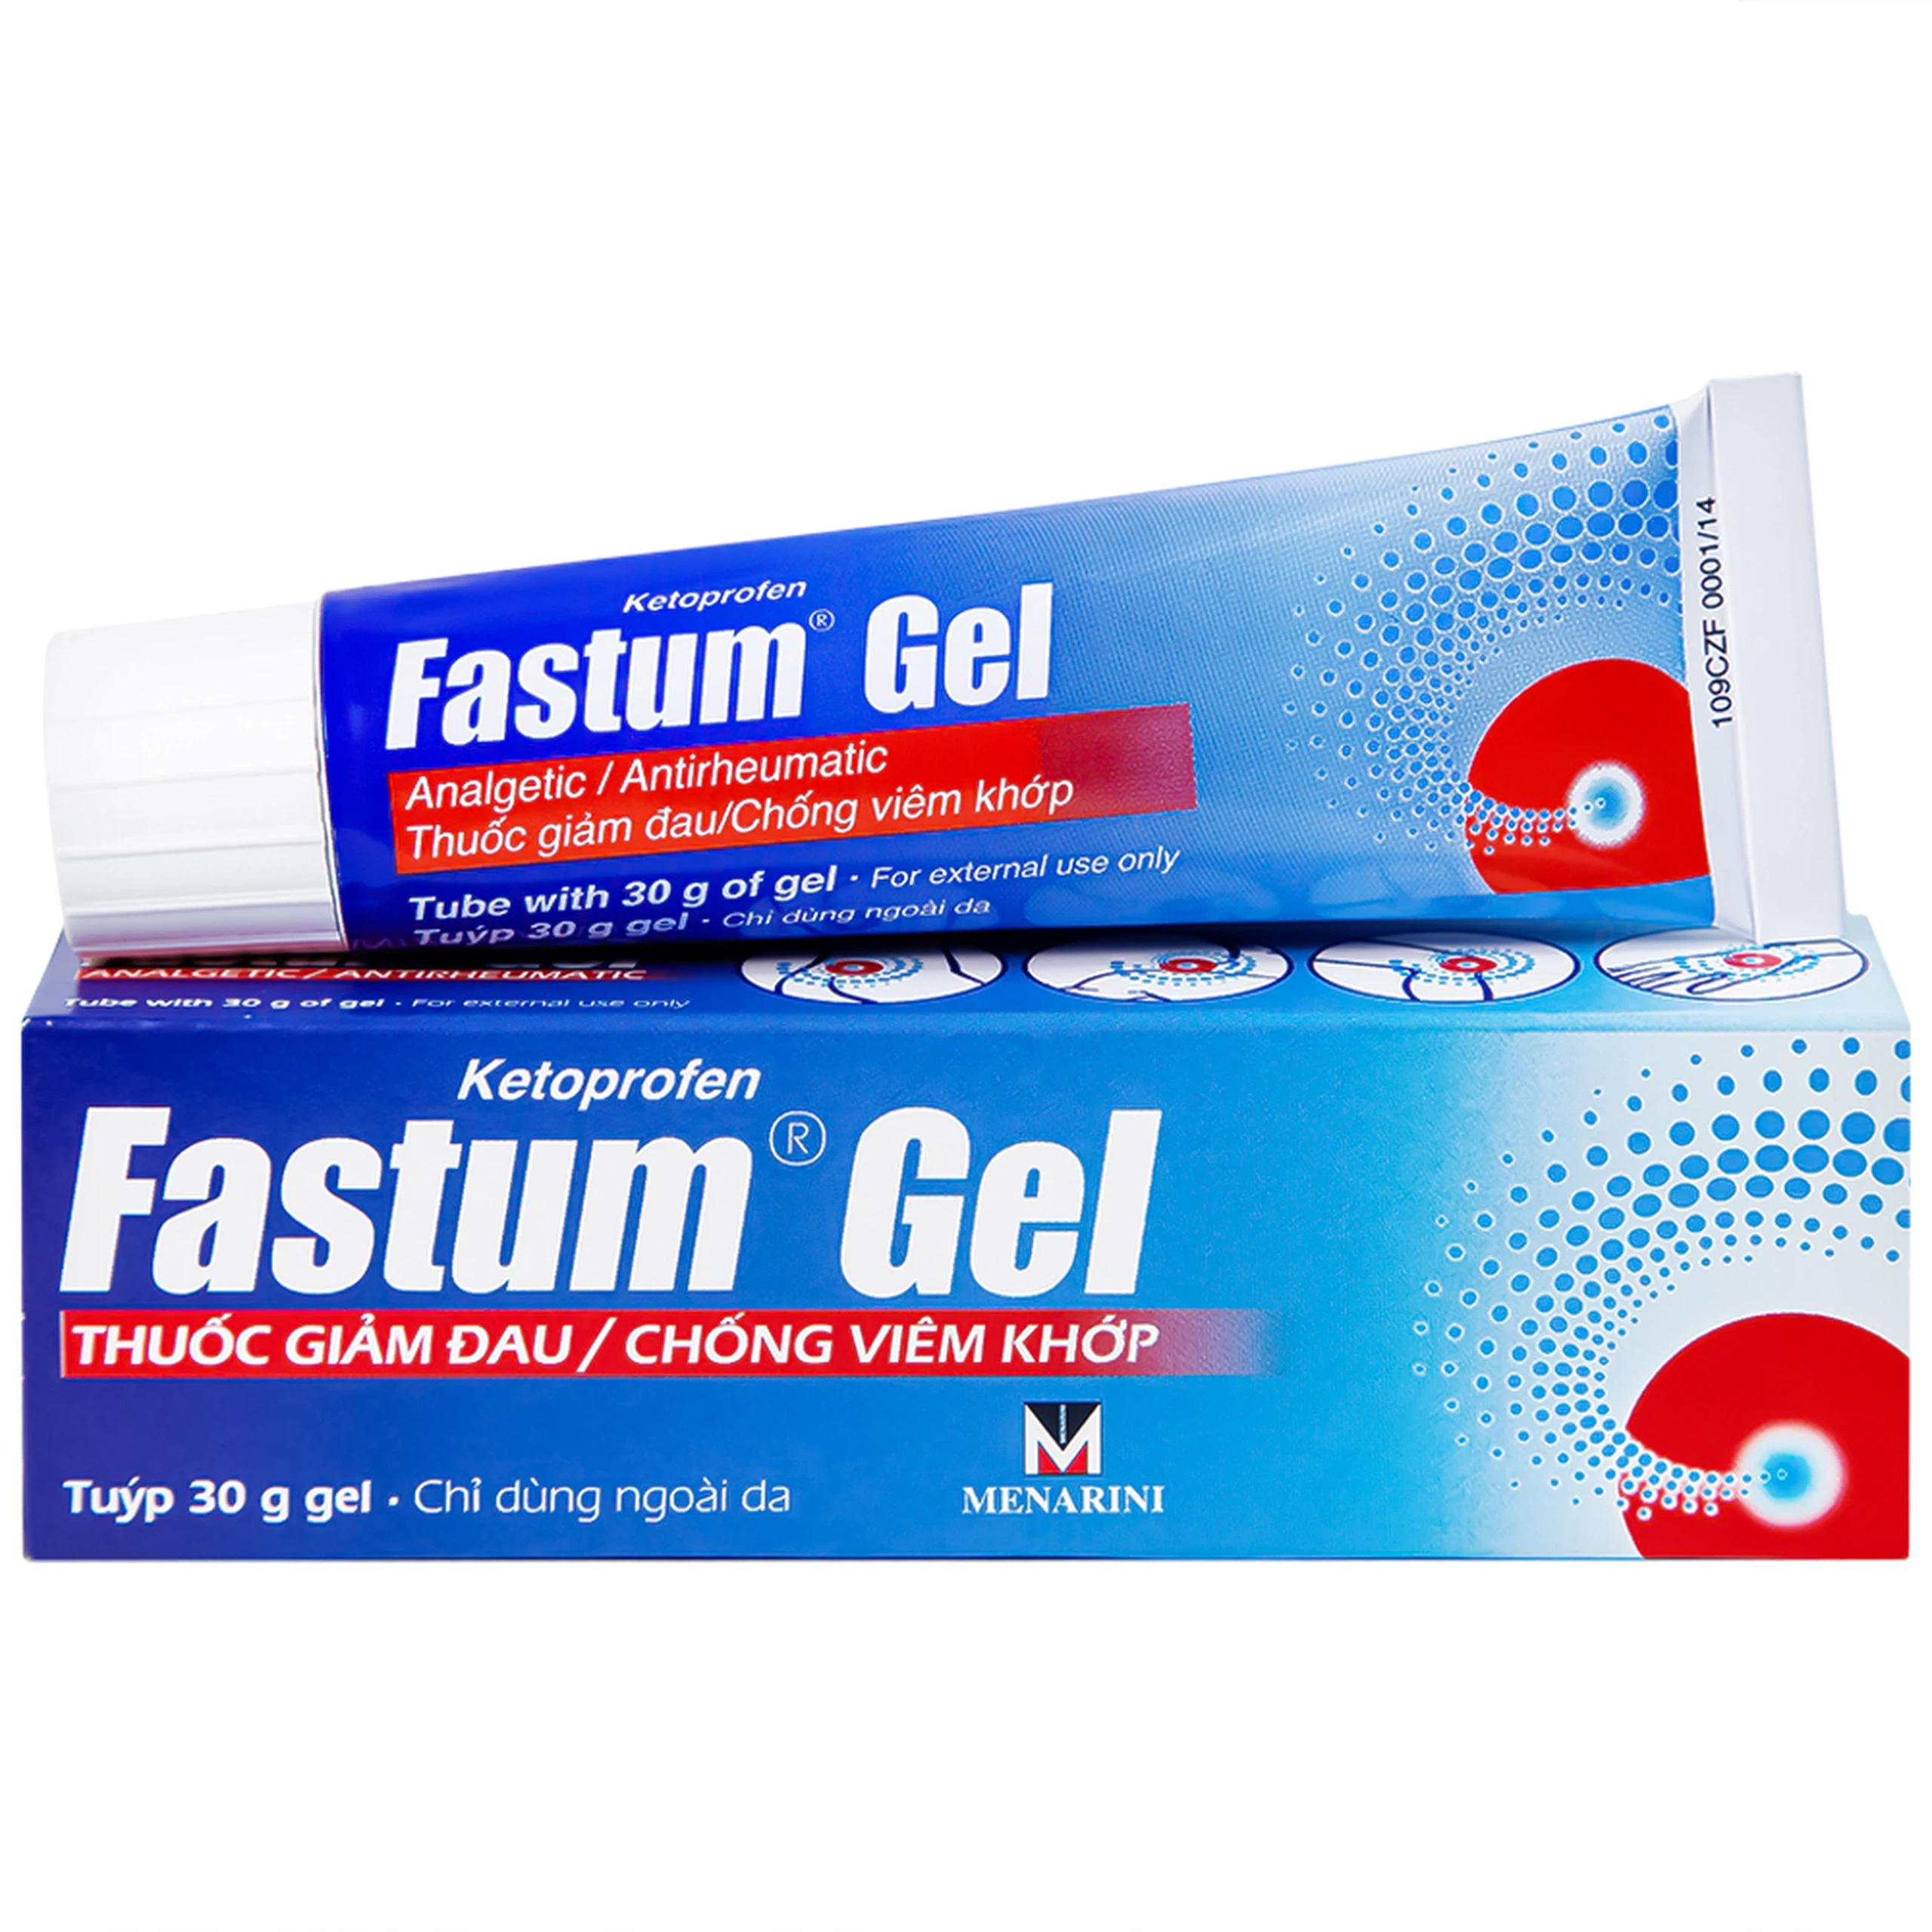 Gel Fastum Menarini giảm đau và kháng viêm cơ xương khớp (30g)